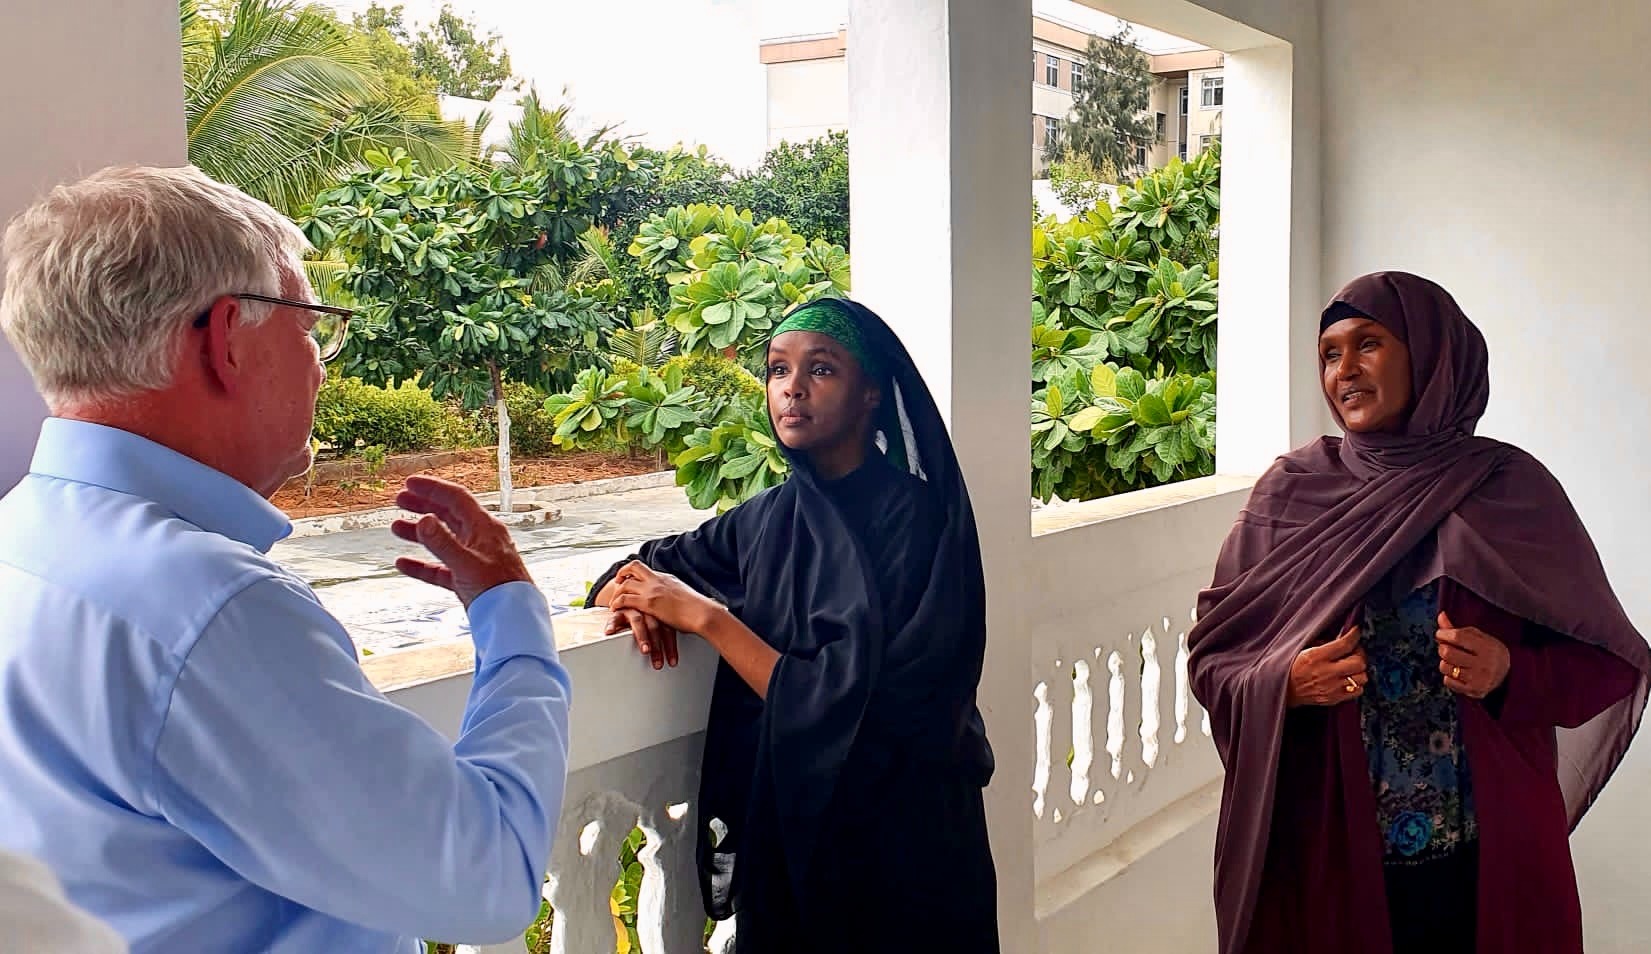 Staatssekretär Jochen Flasbarth trifft die Alternativen Nobelpreisträgerinnen Ilwad Elman und Fartuun Aman. Sie leiten das Elman Peace & Humanitarian Rights Center in Somalia, das Bildung, Ausbildung und psychosoziale Unterstützung für junge Menschen, die von Konflikten betroffen sind, anbietet.